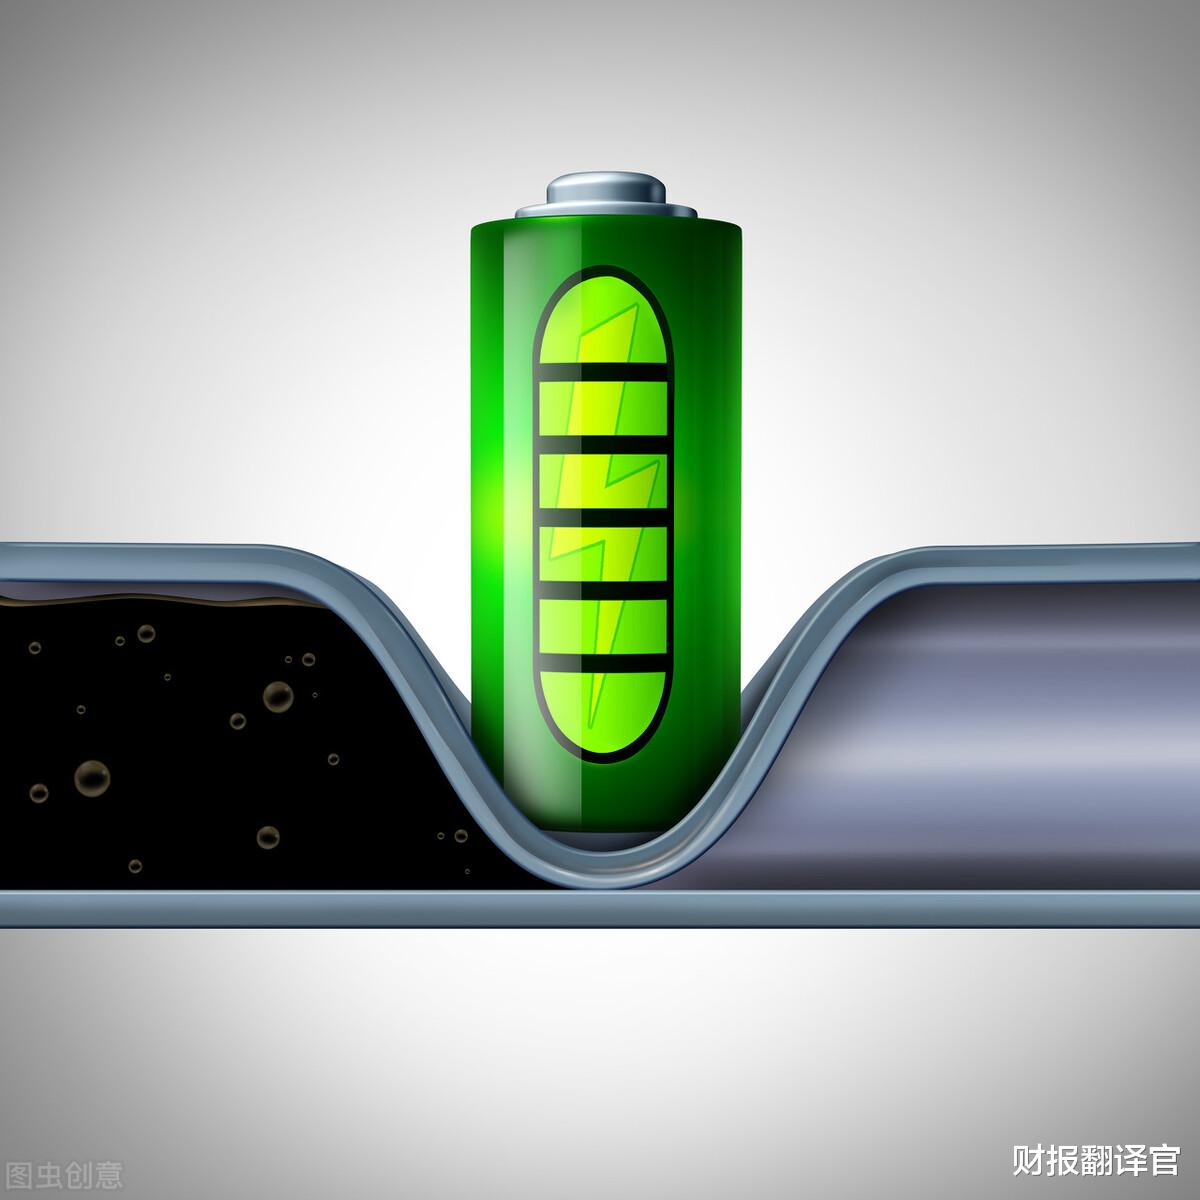 儲能小龍頭, 成功中標中國鐵塔磷酸鐵鋰電池采購項目, 業績暴增1倍-圖5